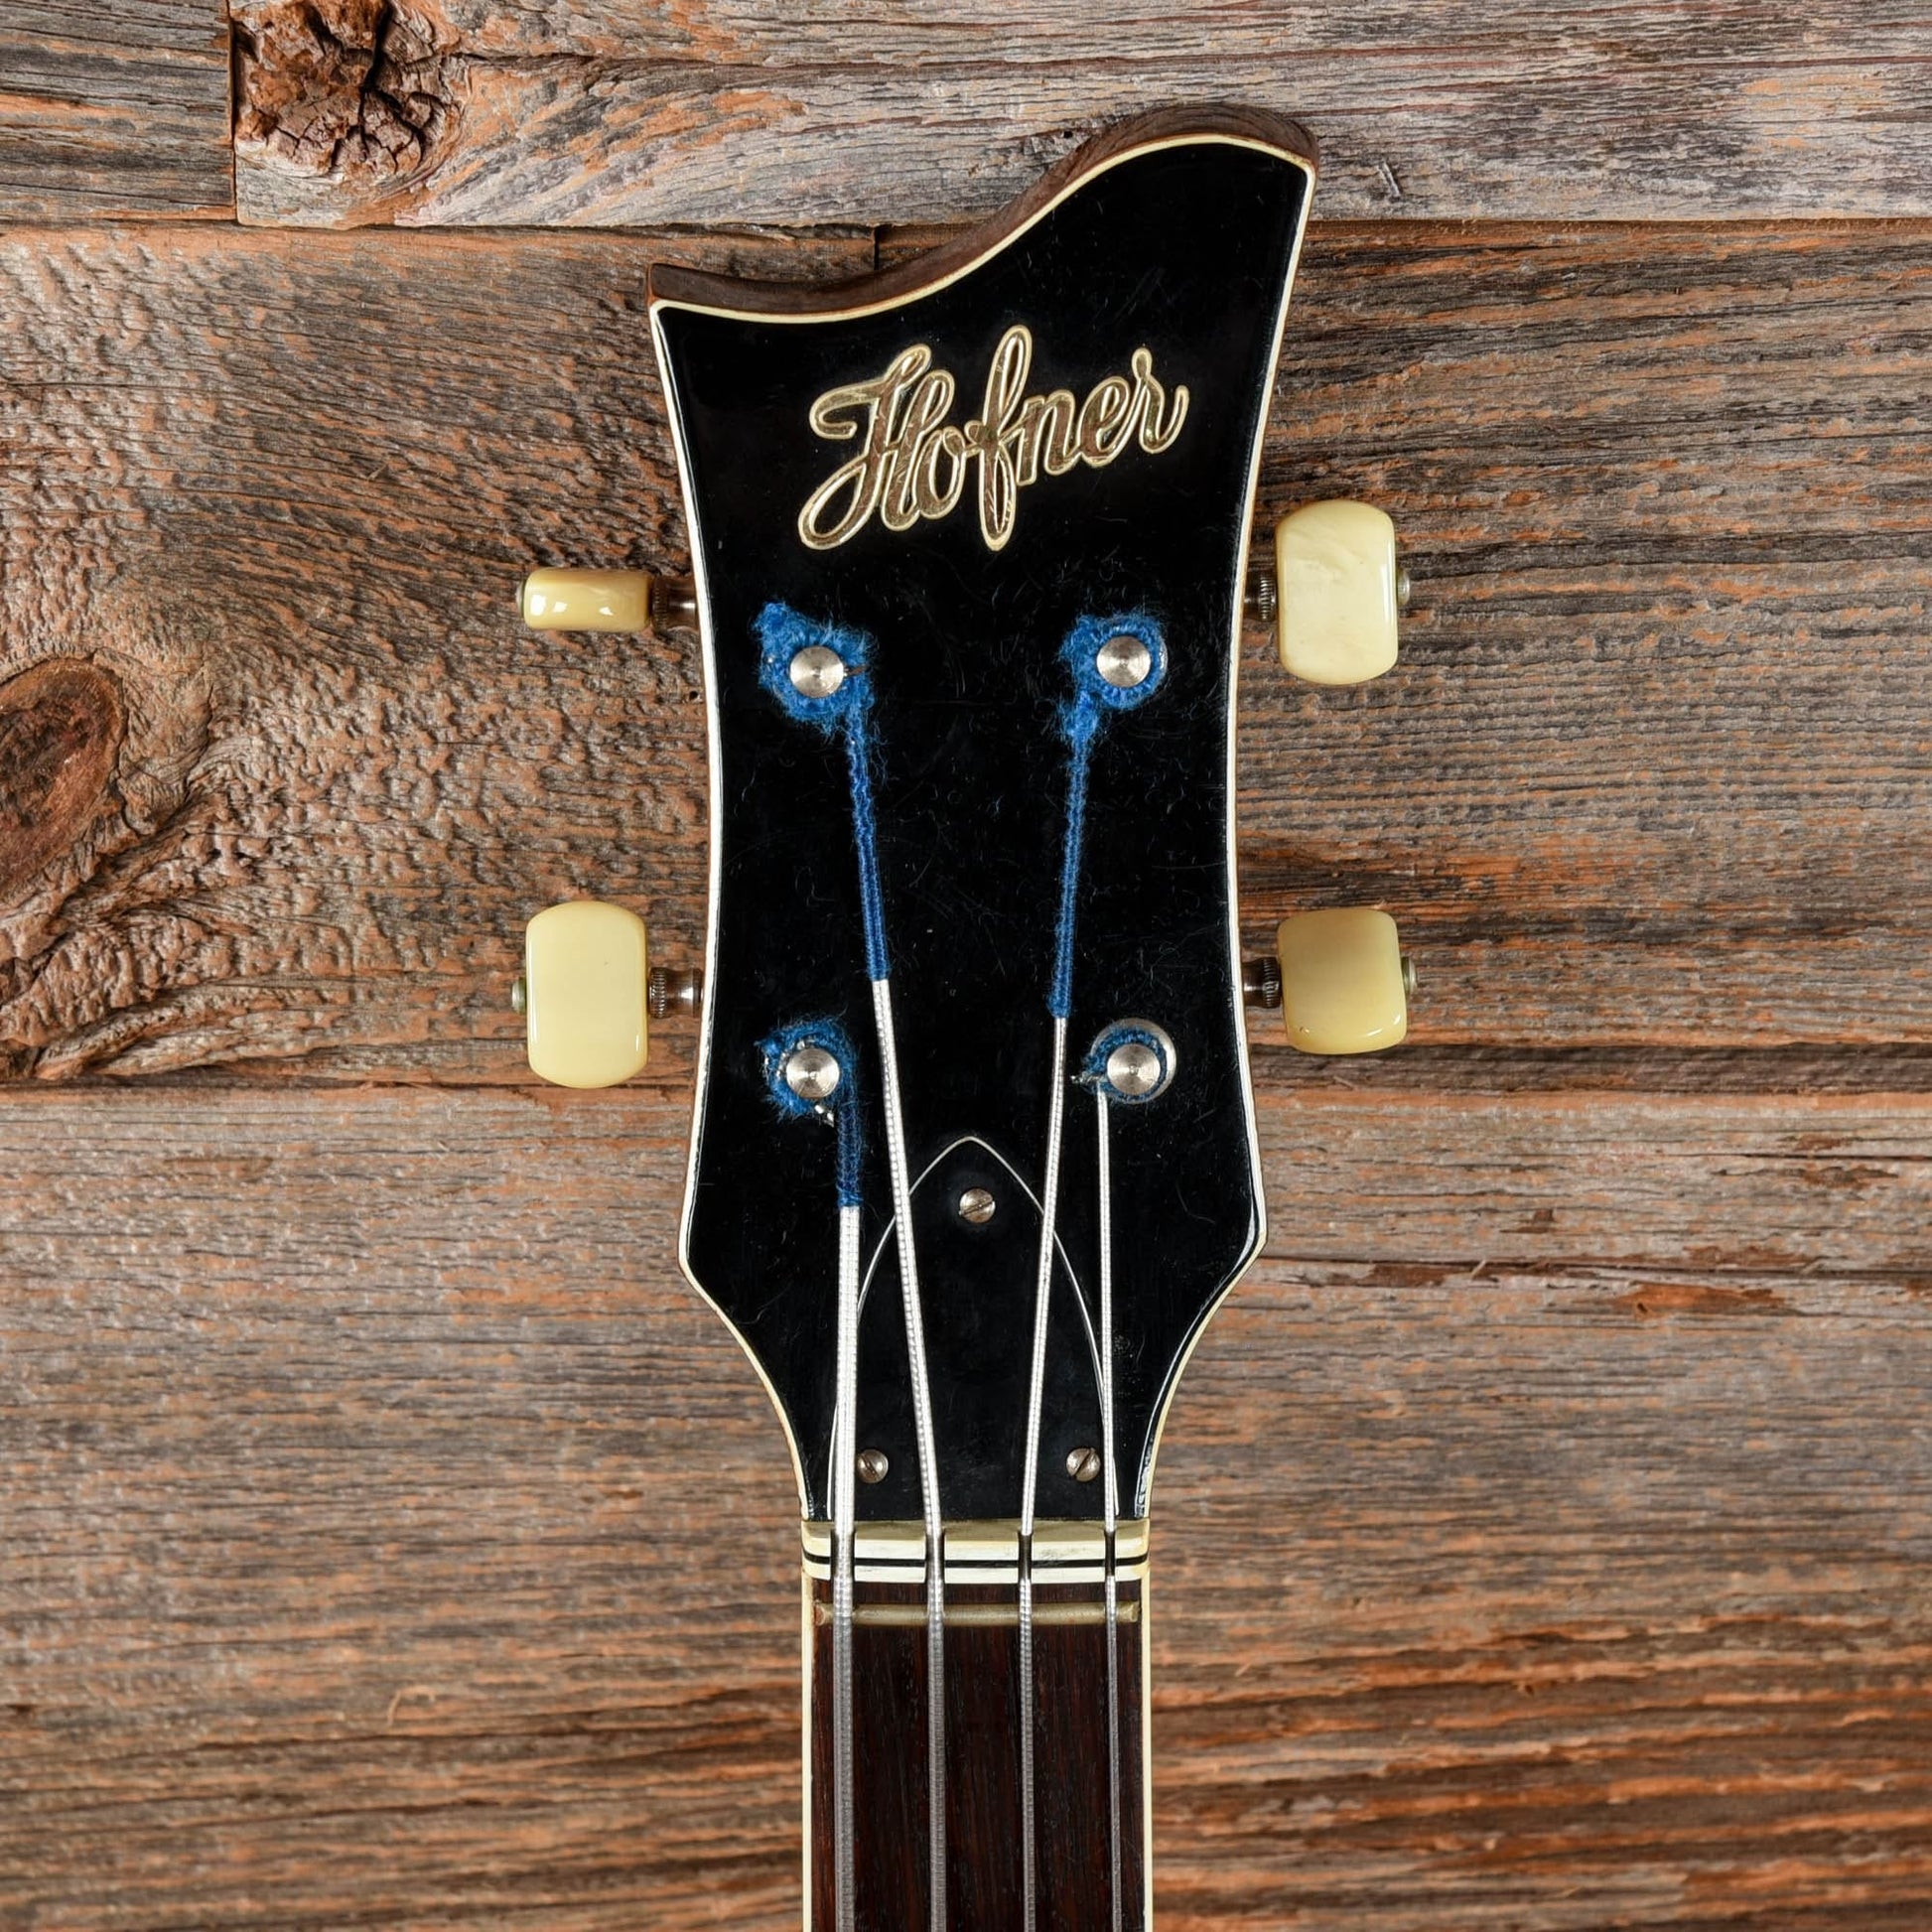 Hofner 500/1 Sunburst 1966 Bass Guitars / 5-String or More